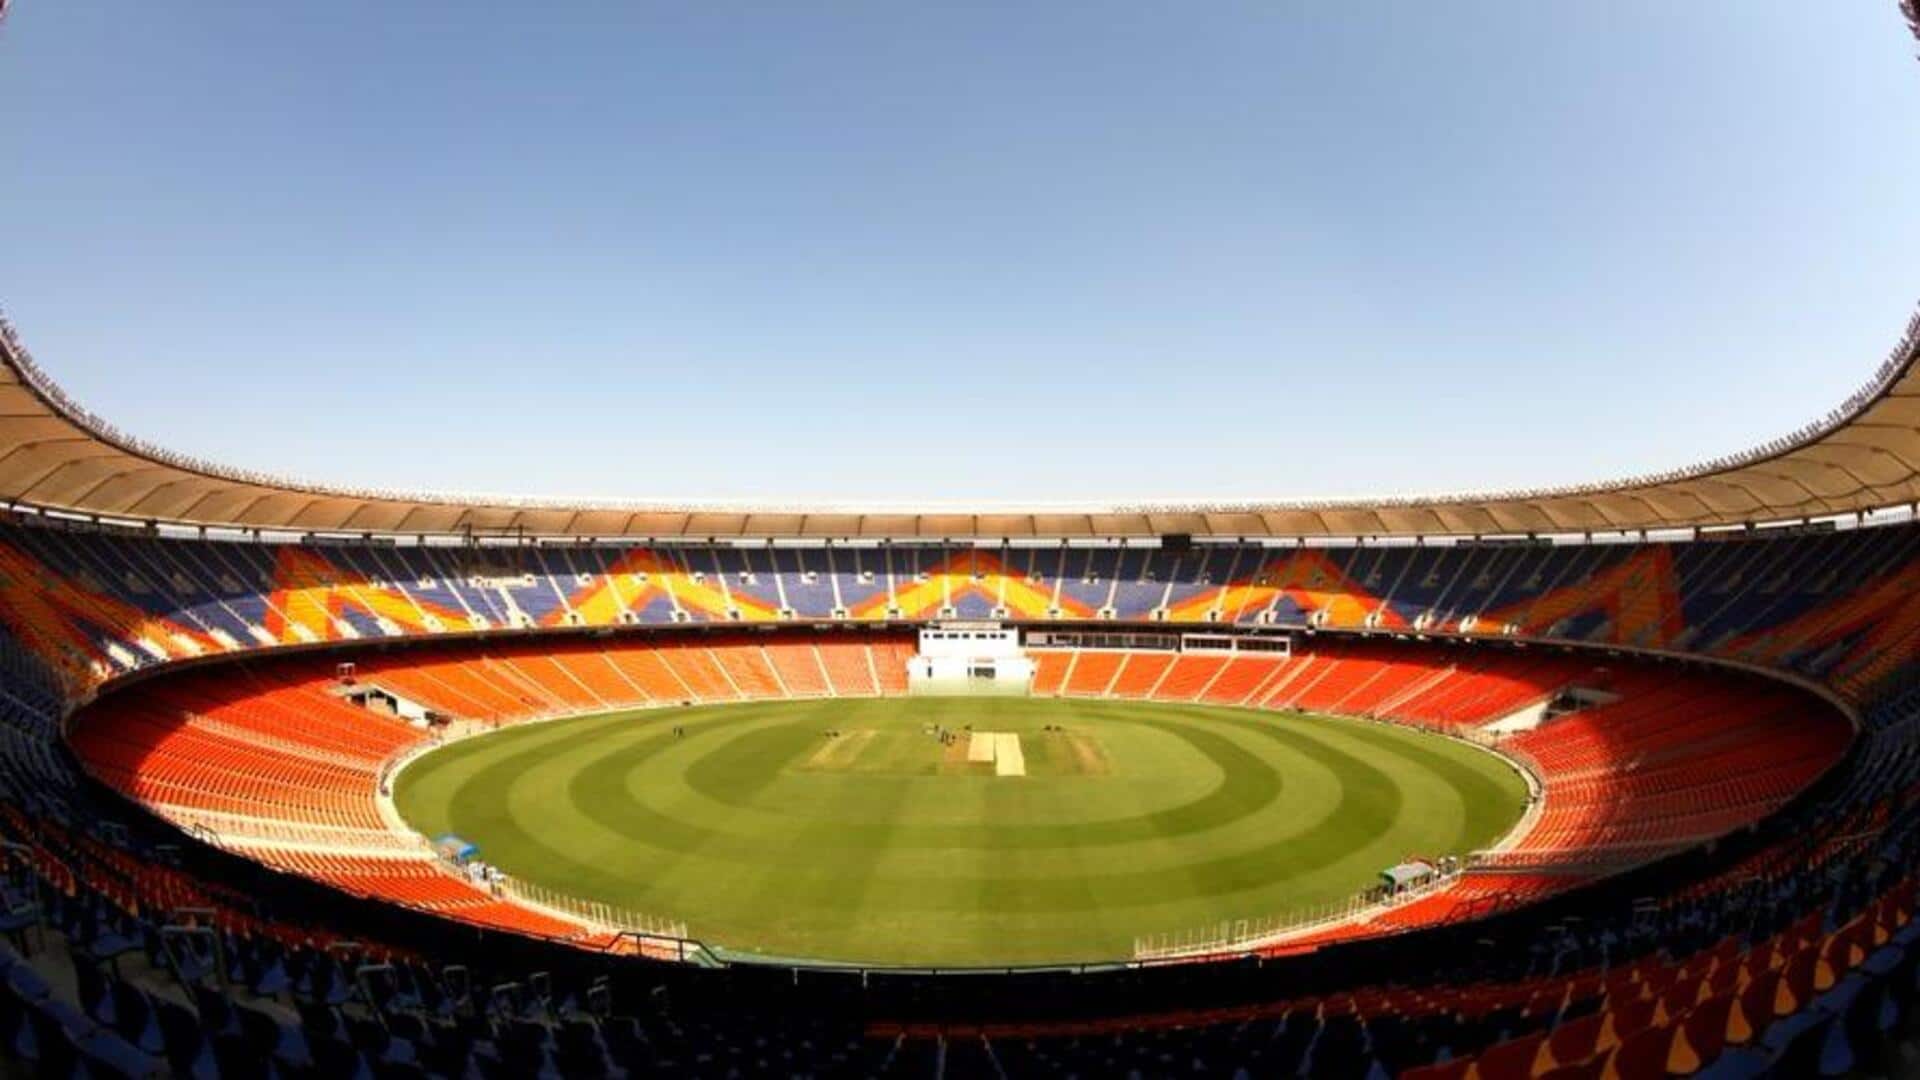 विश्व कप 2023 के लिए तैयार किया जा रहा है नरेंद्र मोदी स्टेडियम, देखिए तस्वीरें